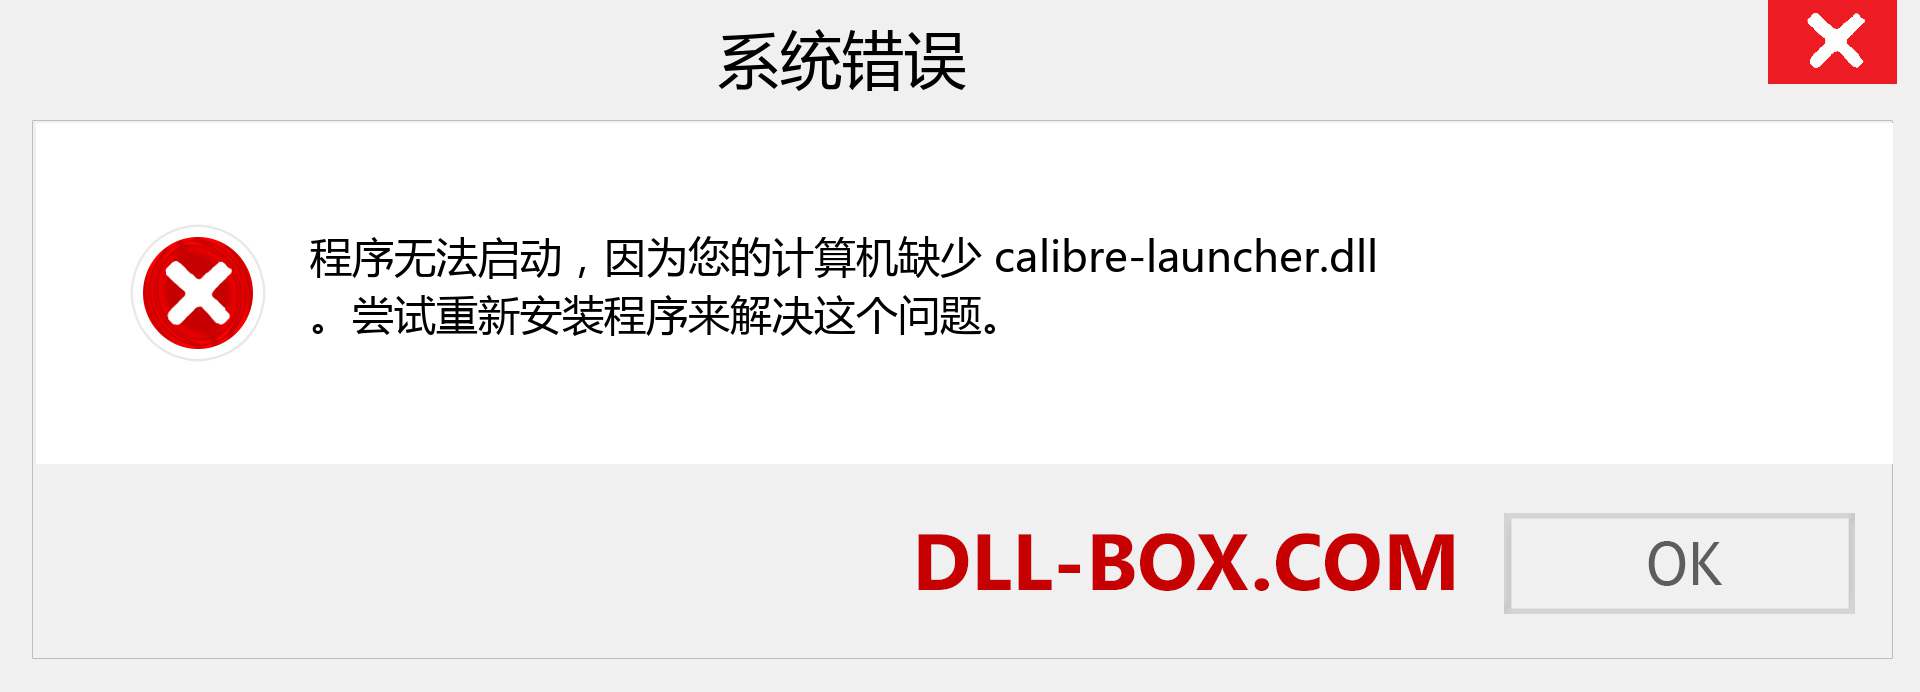 calibre-launcher.dll 文件丢失？。 适用于 Windows 7、8、10 的下载 - 修复 Windows、照片、图像上的 calibre-launcher dll 丢失错误